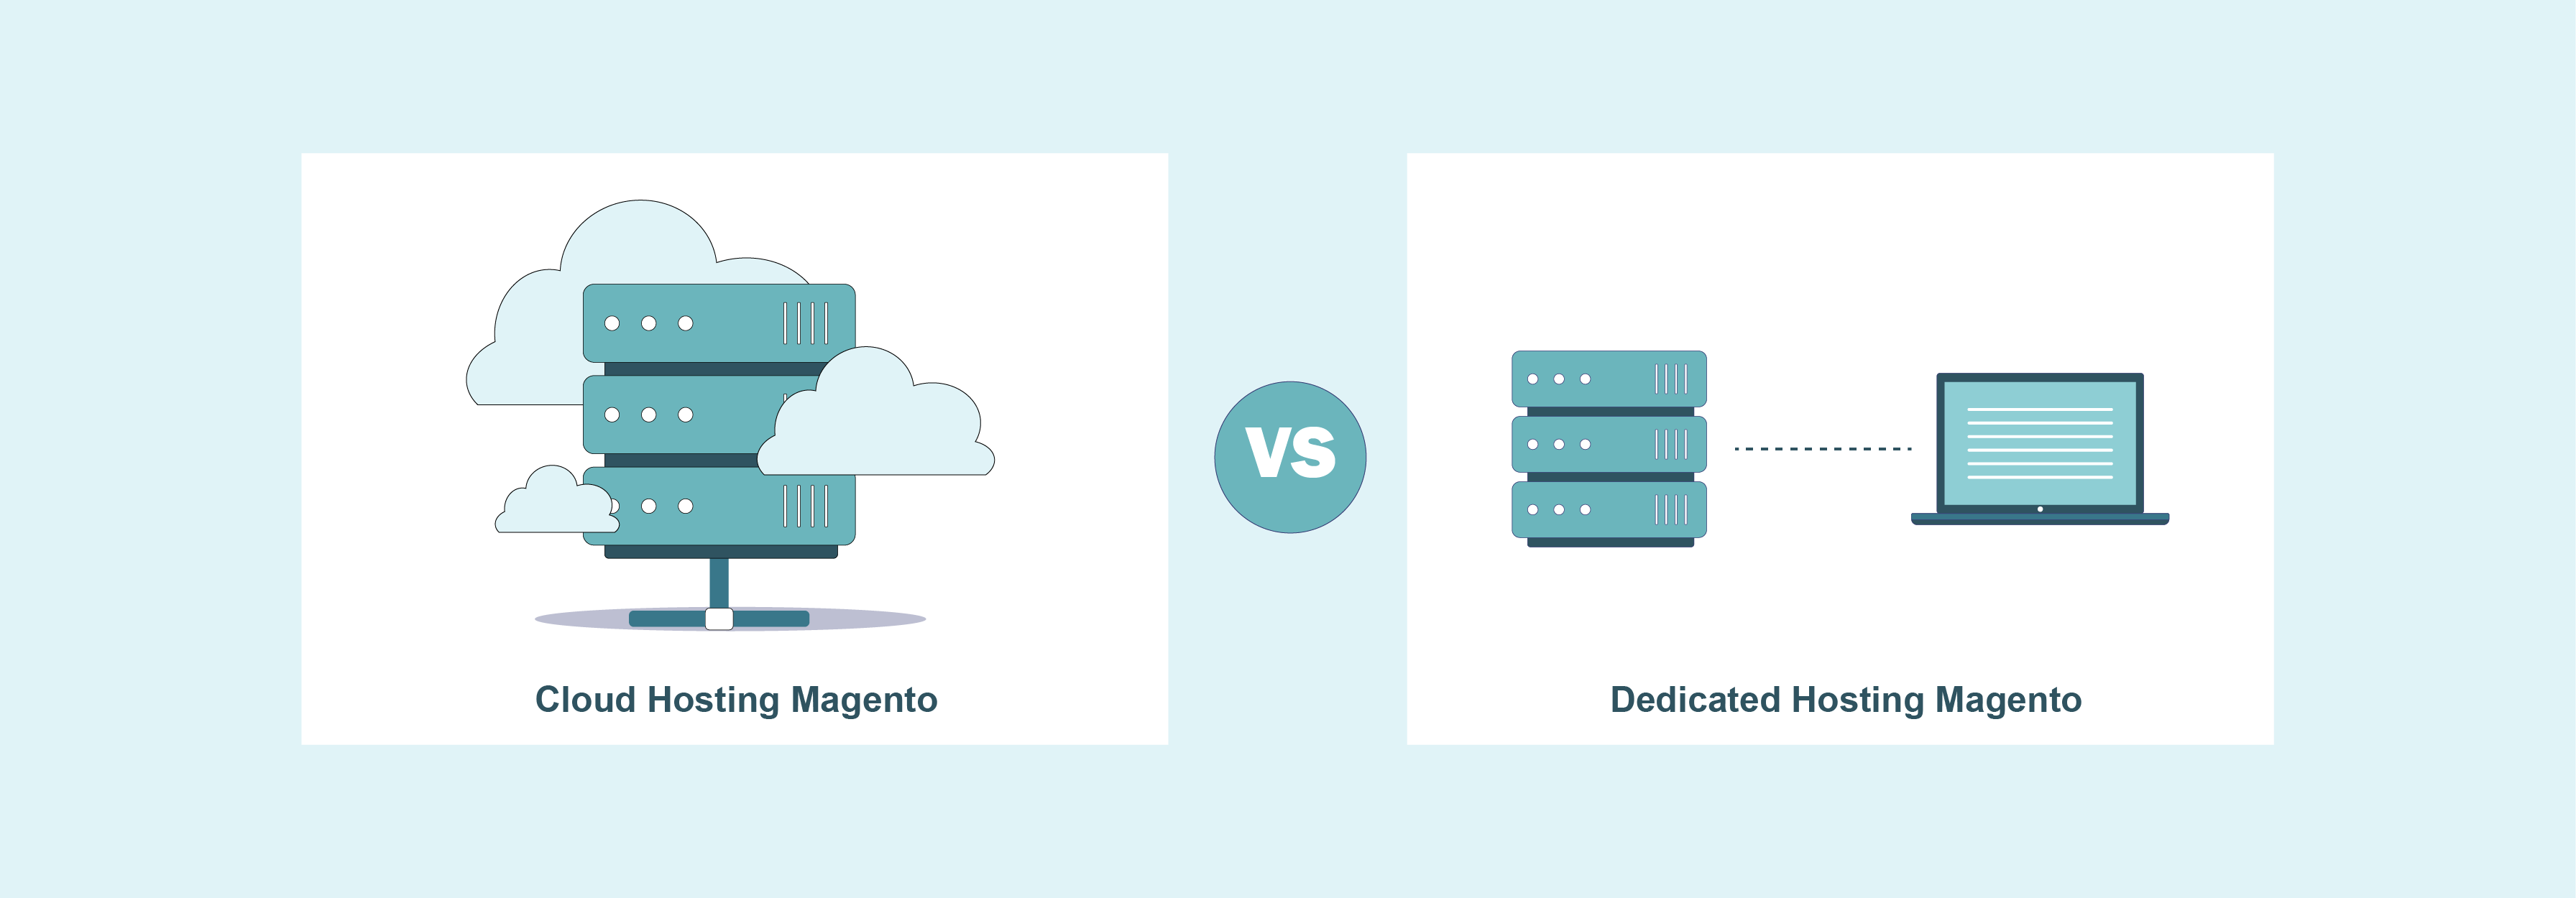 Cloud Hosting Magento vs Dedicated Hosting